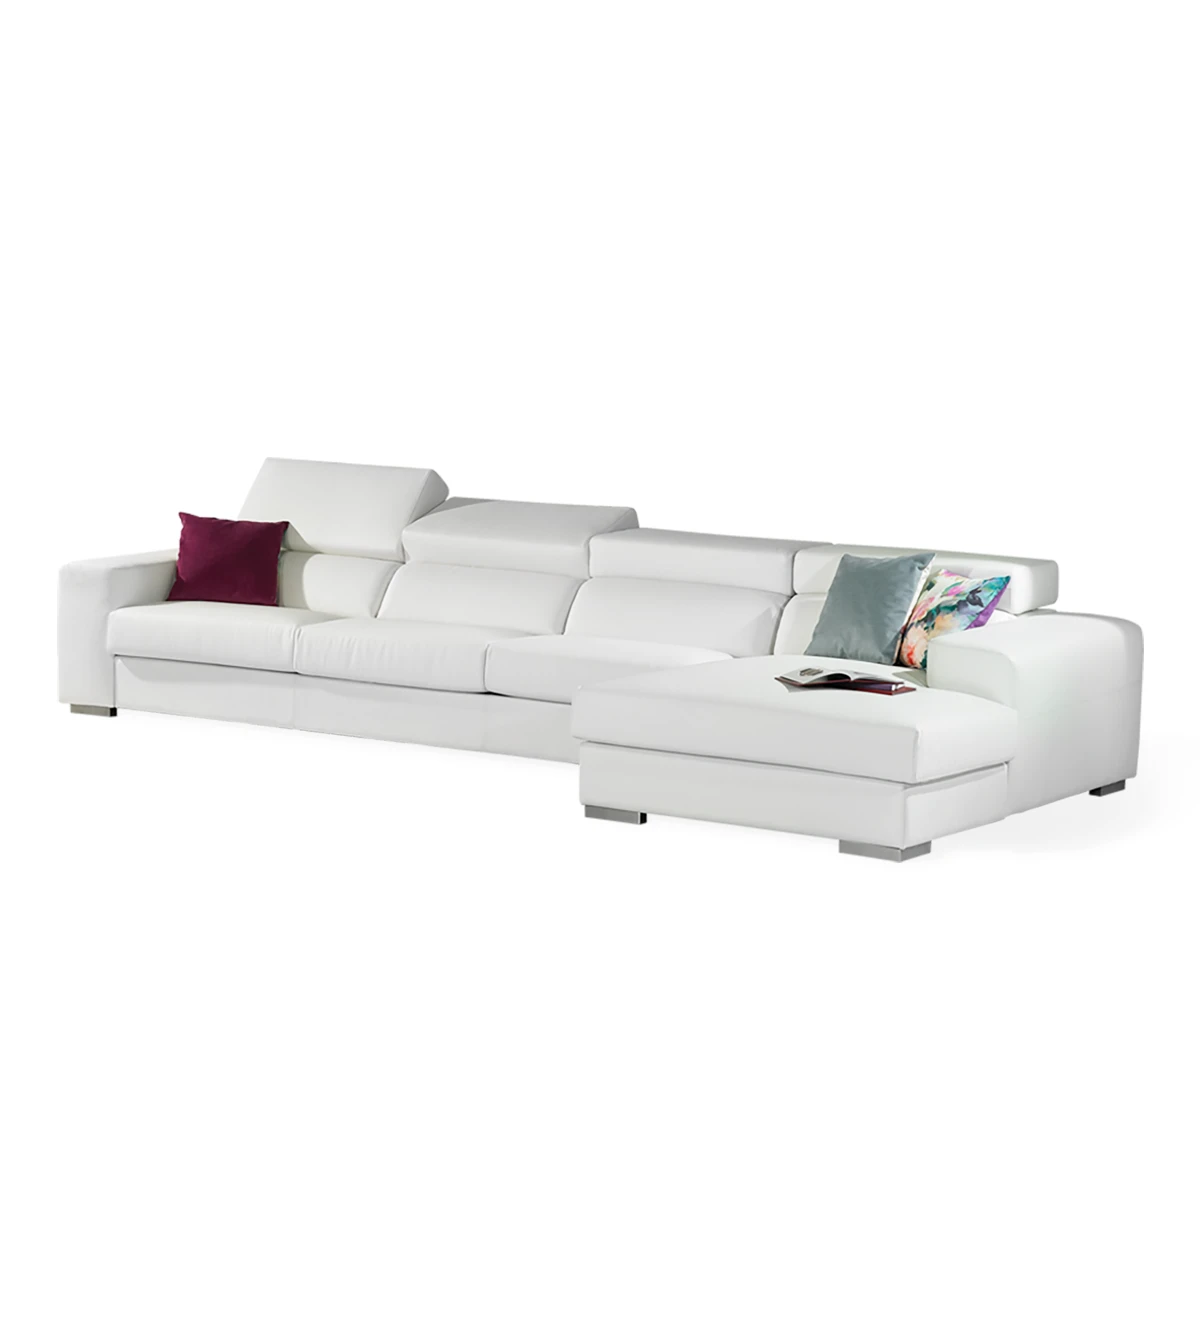 Canapé 3 places avec chaise longue, revêtu de simili cuir blanc, avec têtières inclinables.